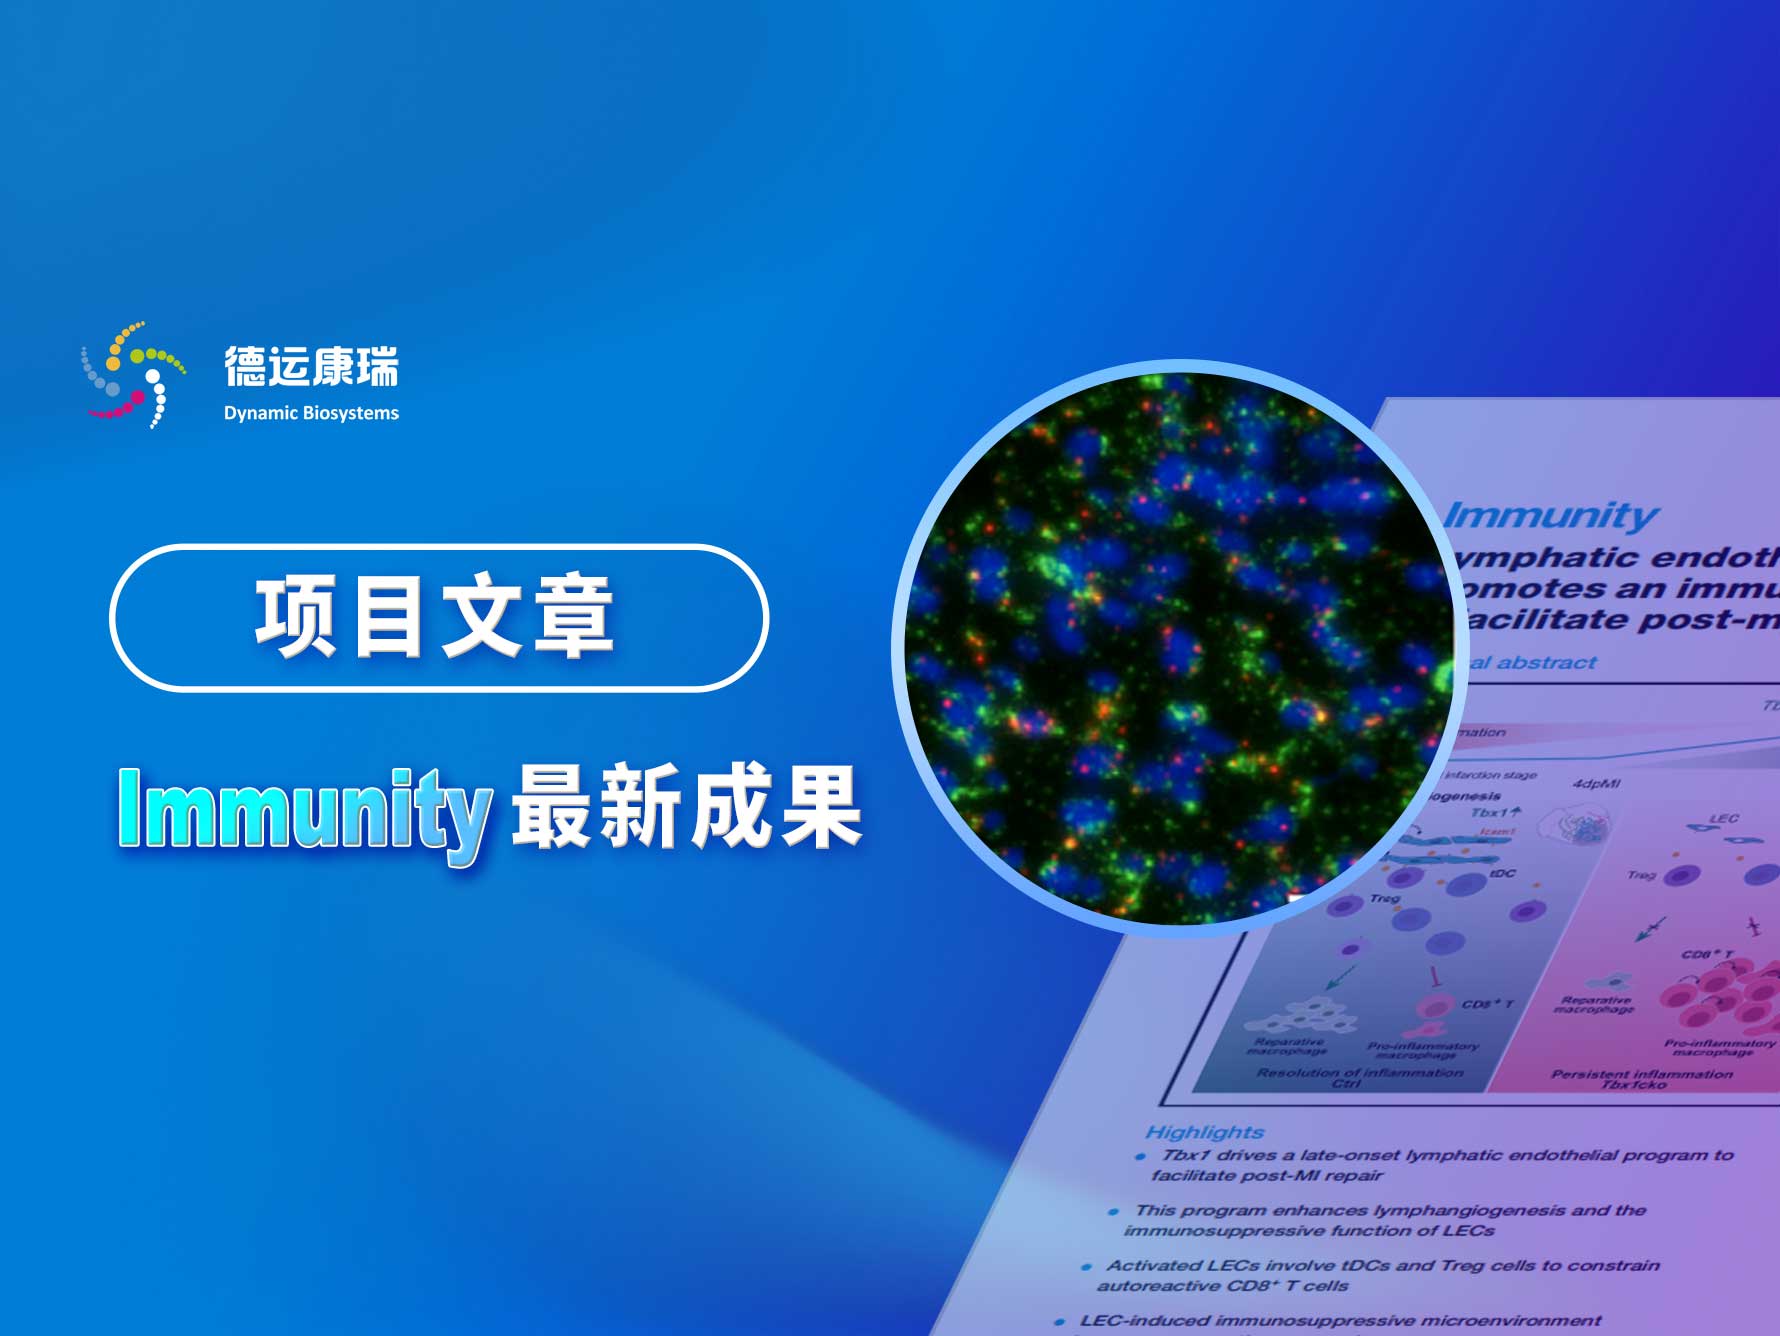 国际免疫学顶尖杂志Immunity文章发表|德运康瑞RNA荧光原位检测技术助力心梗修复机制研究